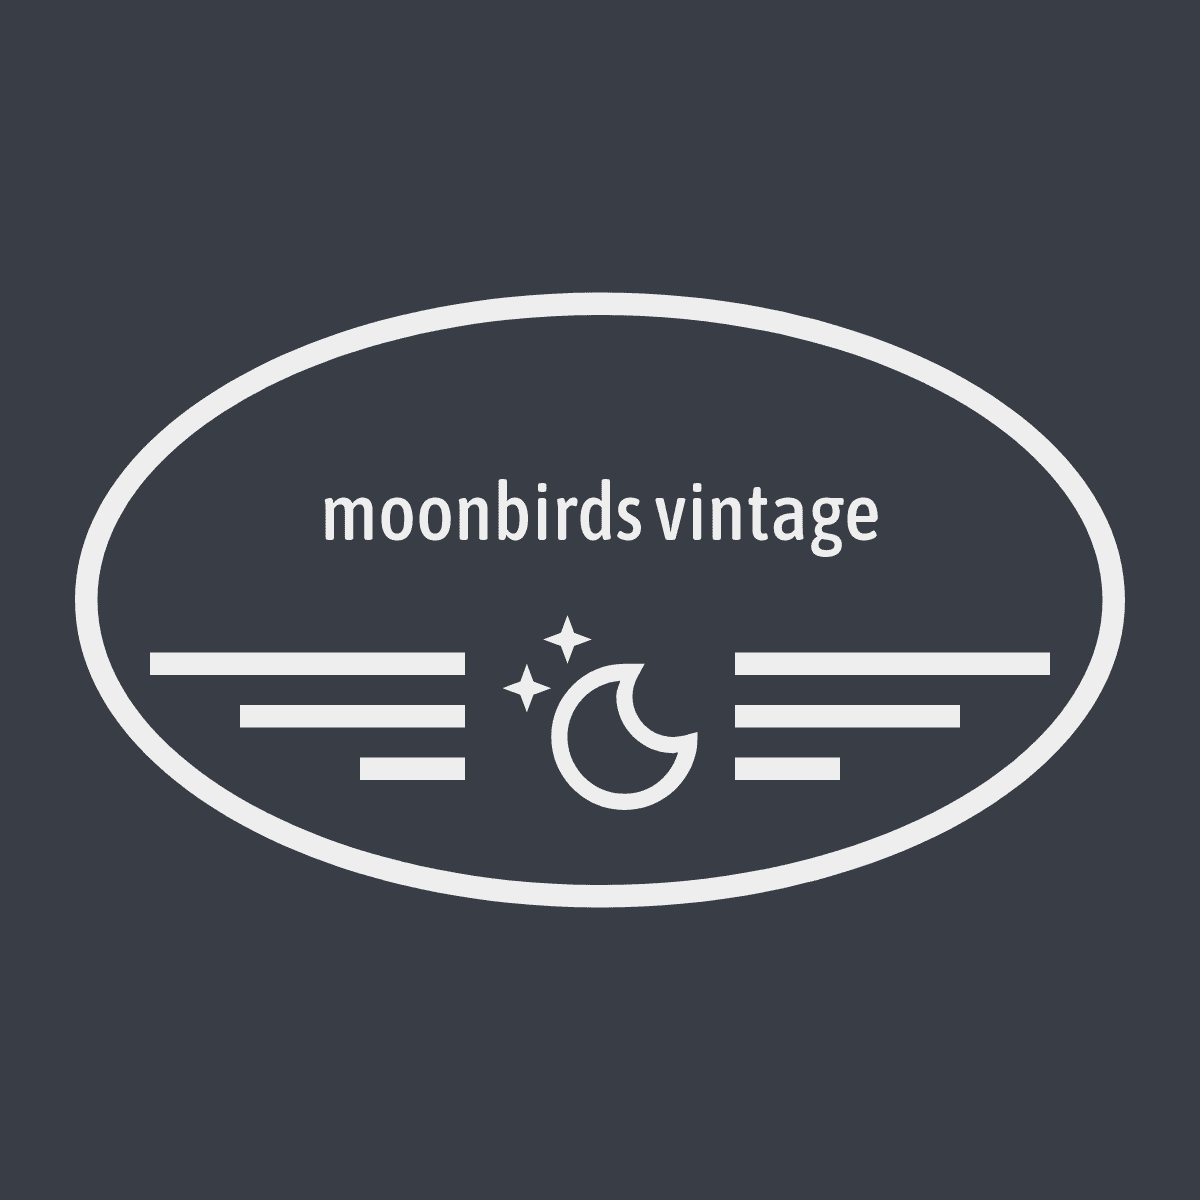 moonbirds vintage